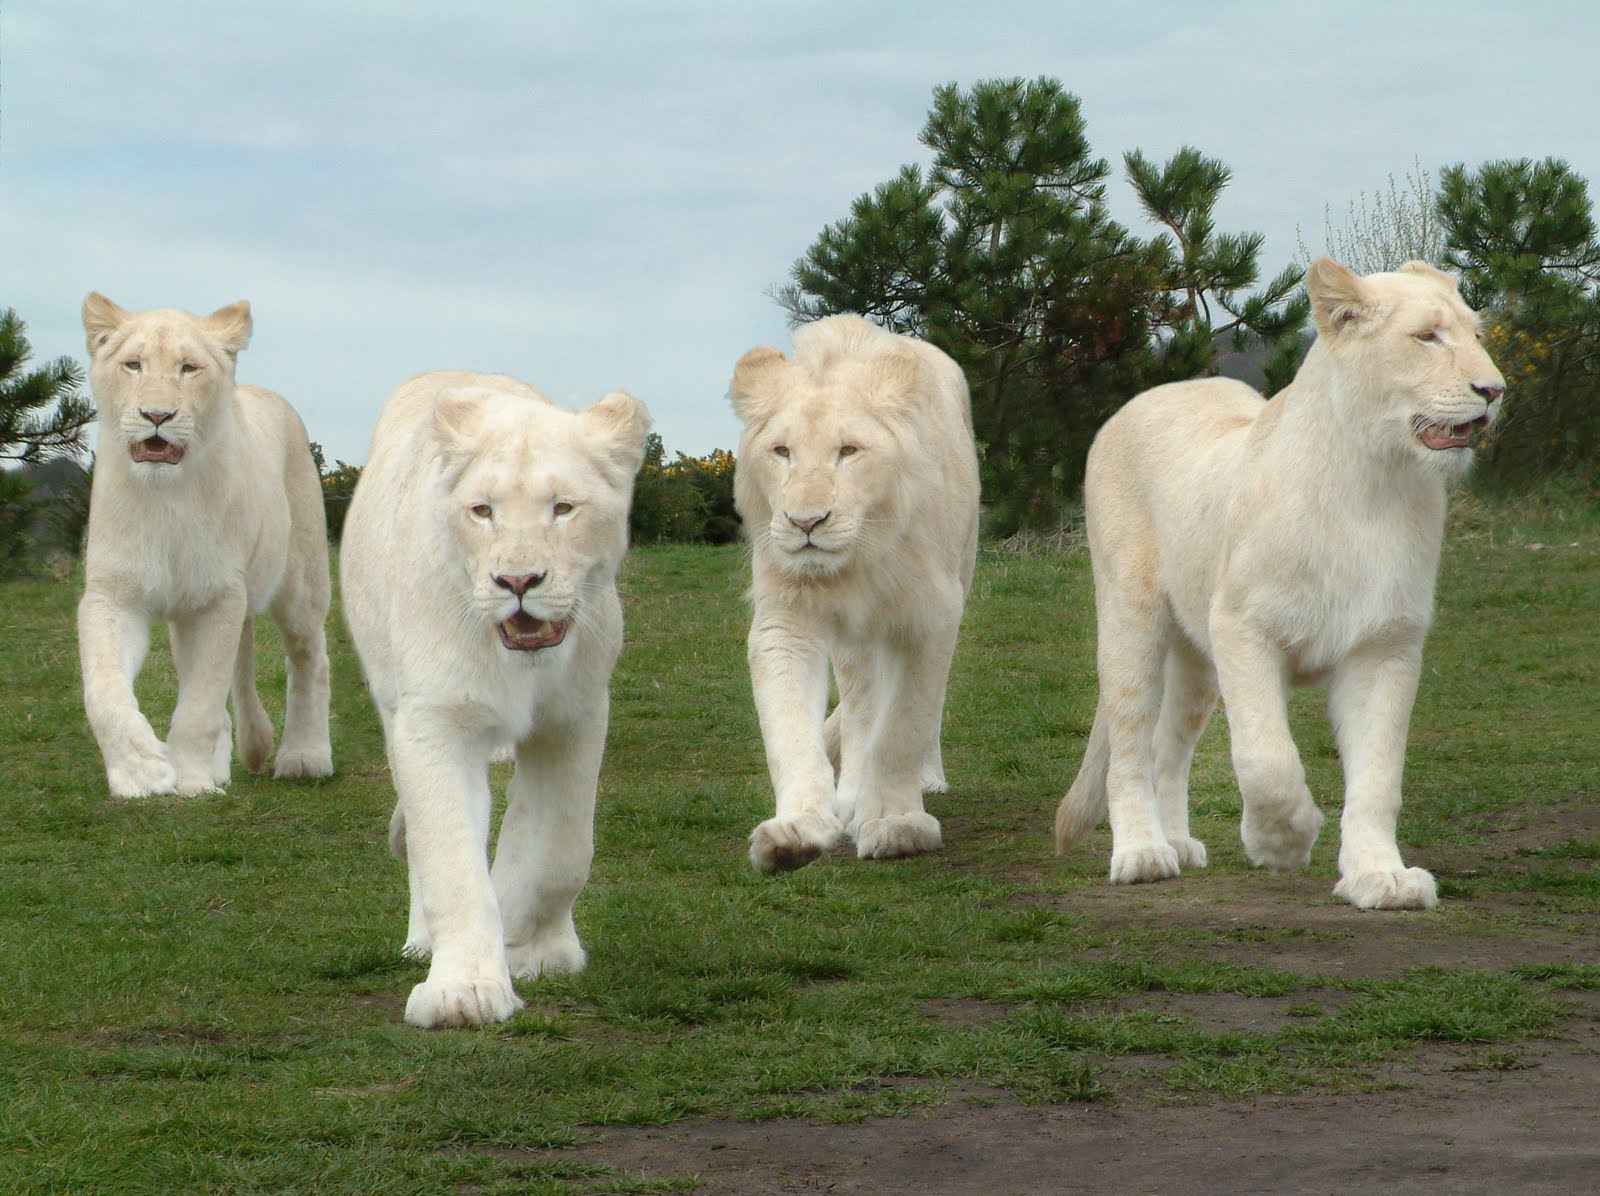 Lion White